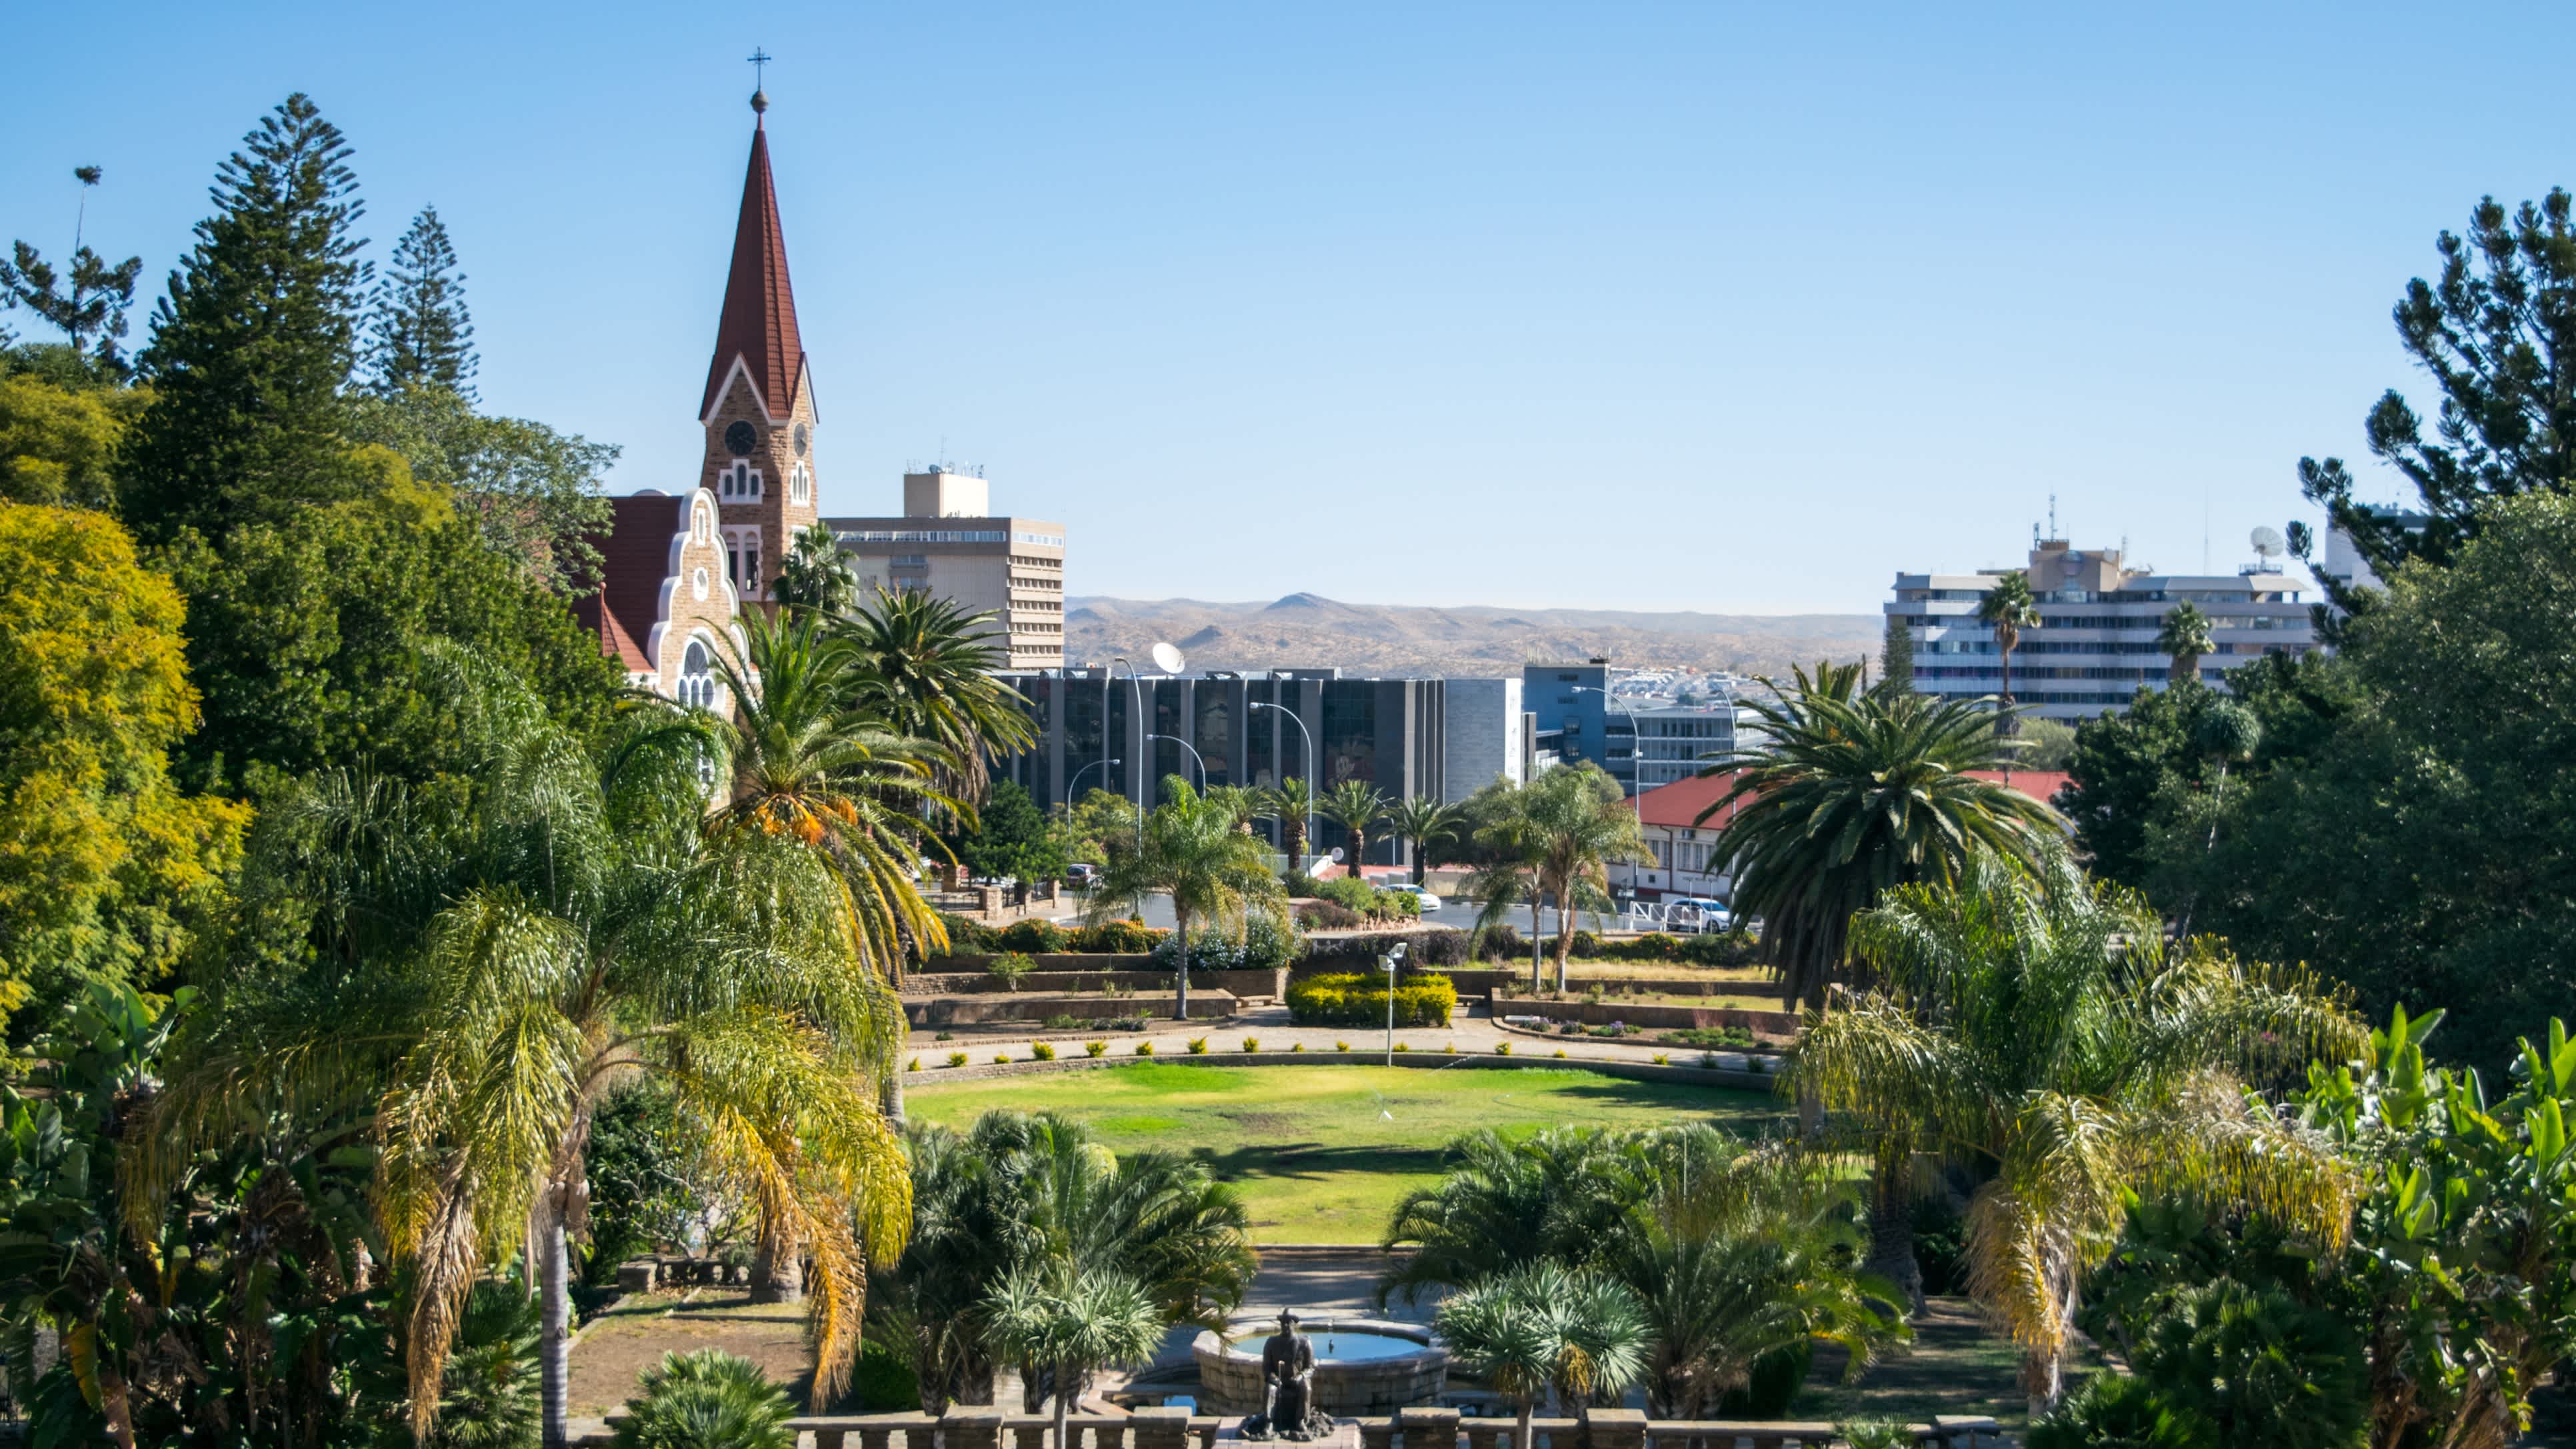 Blick auf die Christuskirche und das Stadtzentrum von Windhoek vom Parliament Park aus - Windhoek, Namibia 